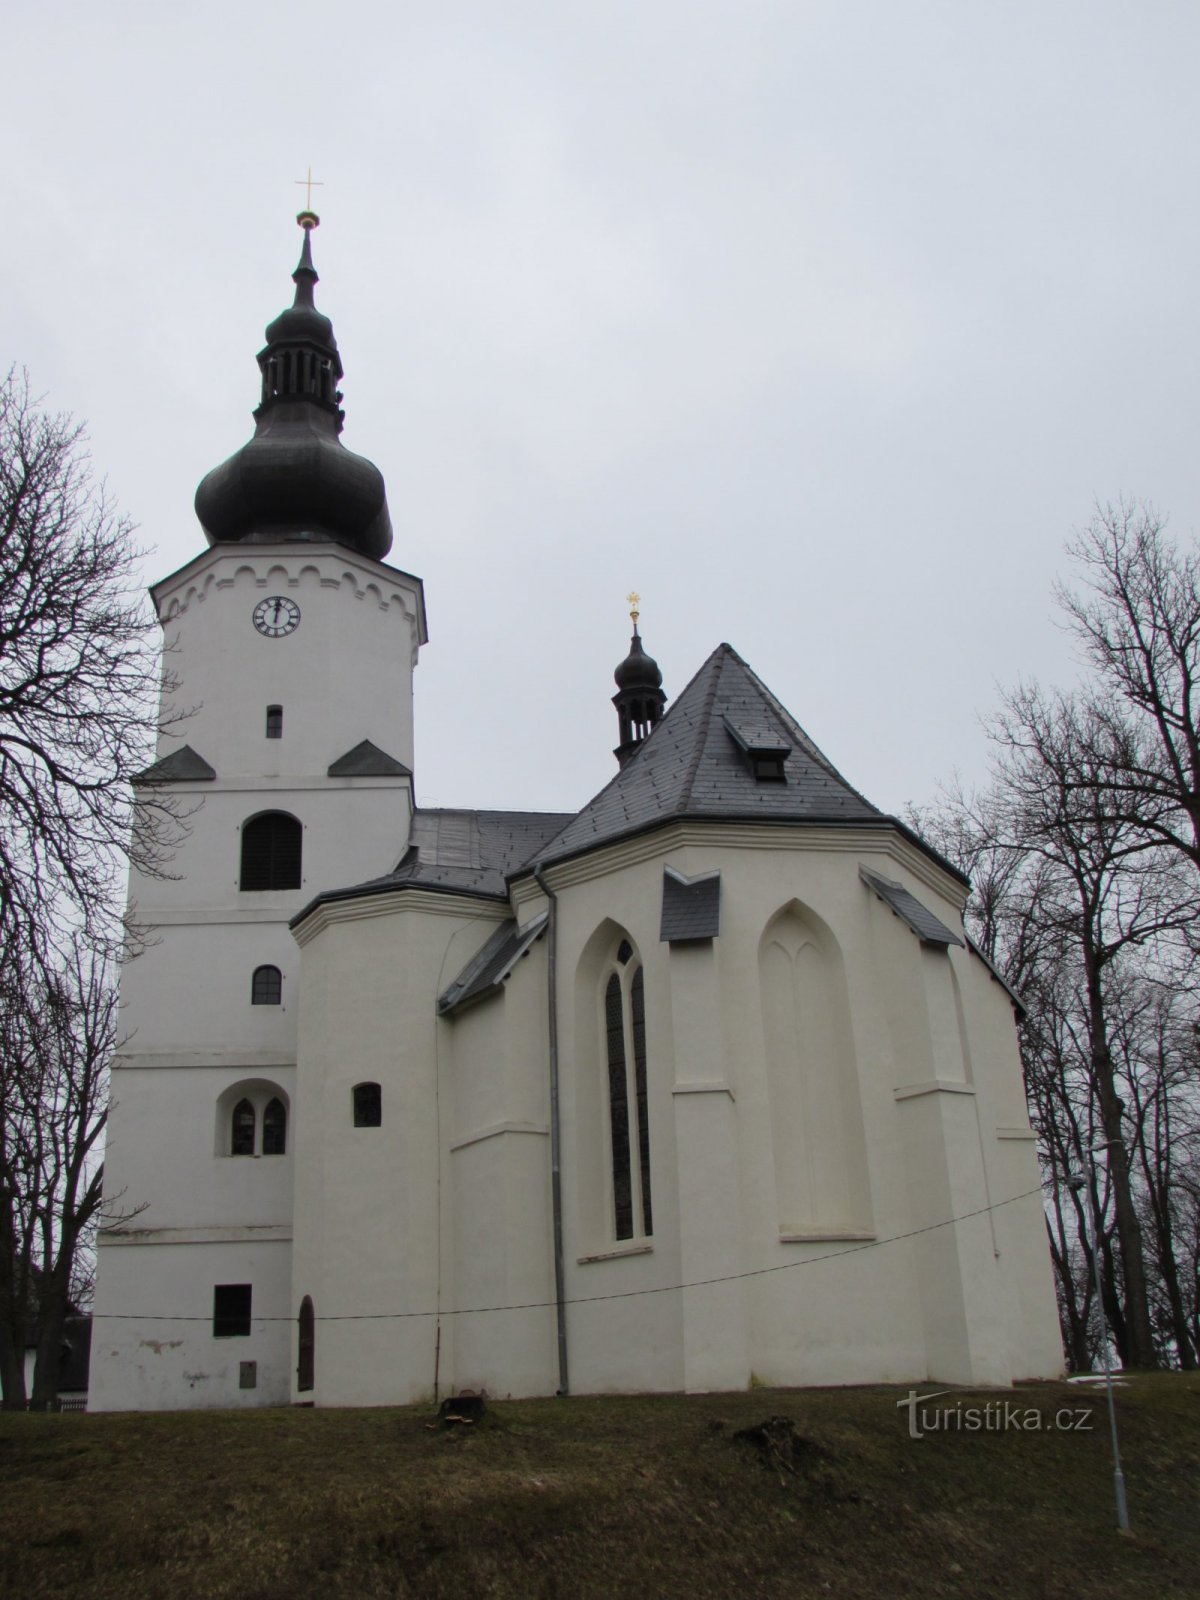 Jindřichovice, nhà thờ St. Martin